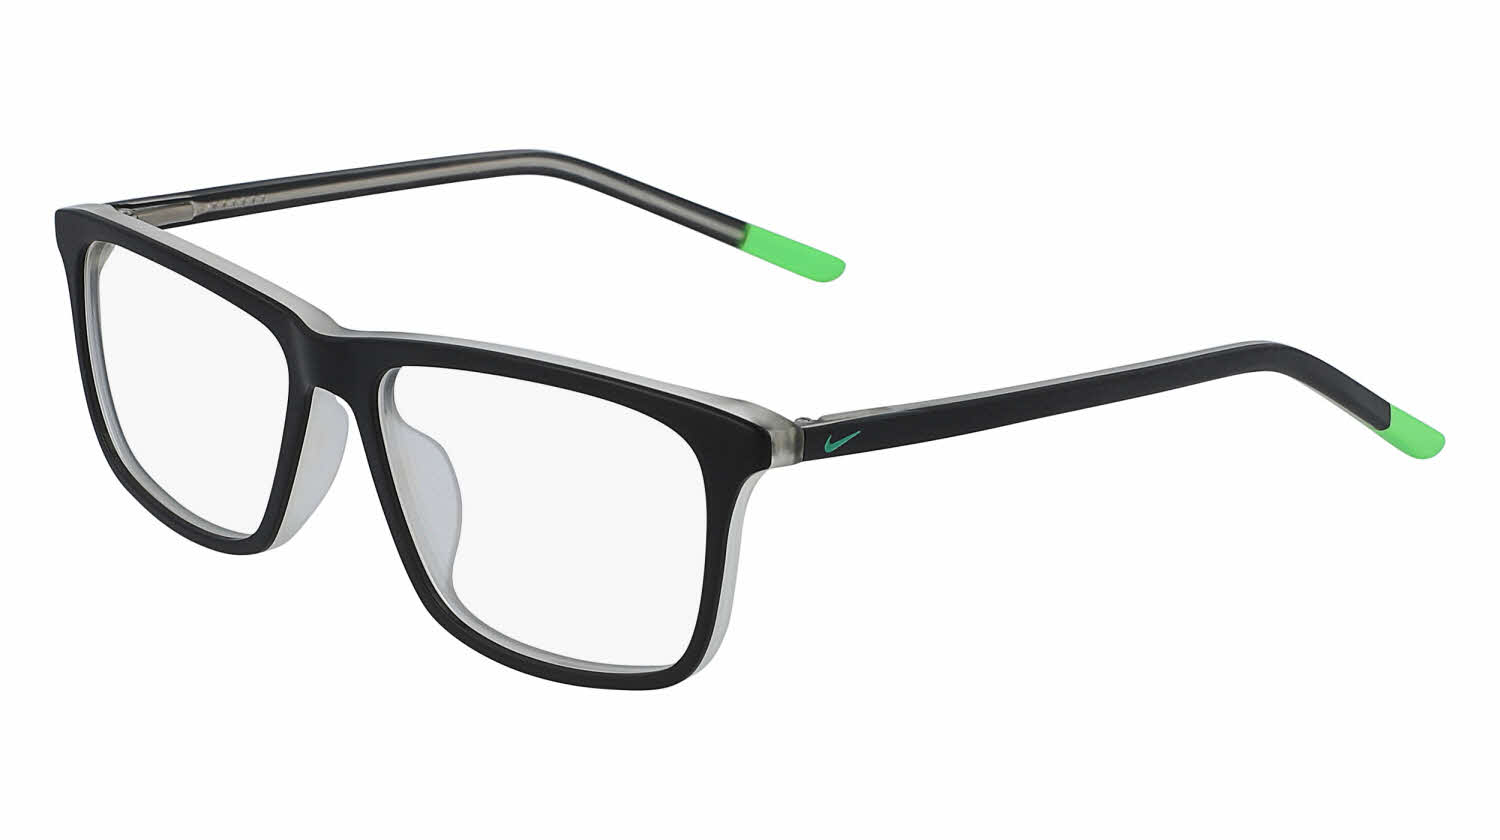 Nike Kids 5541 - Children's Eyeglasses | FramesDirect.com